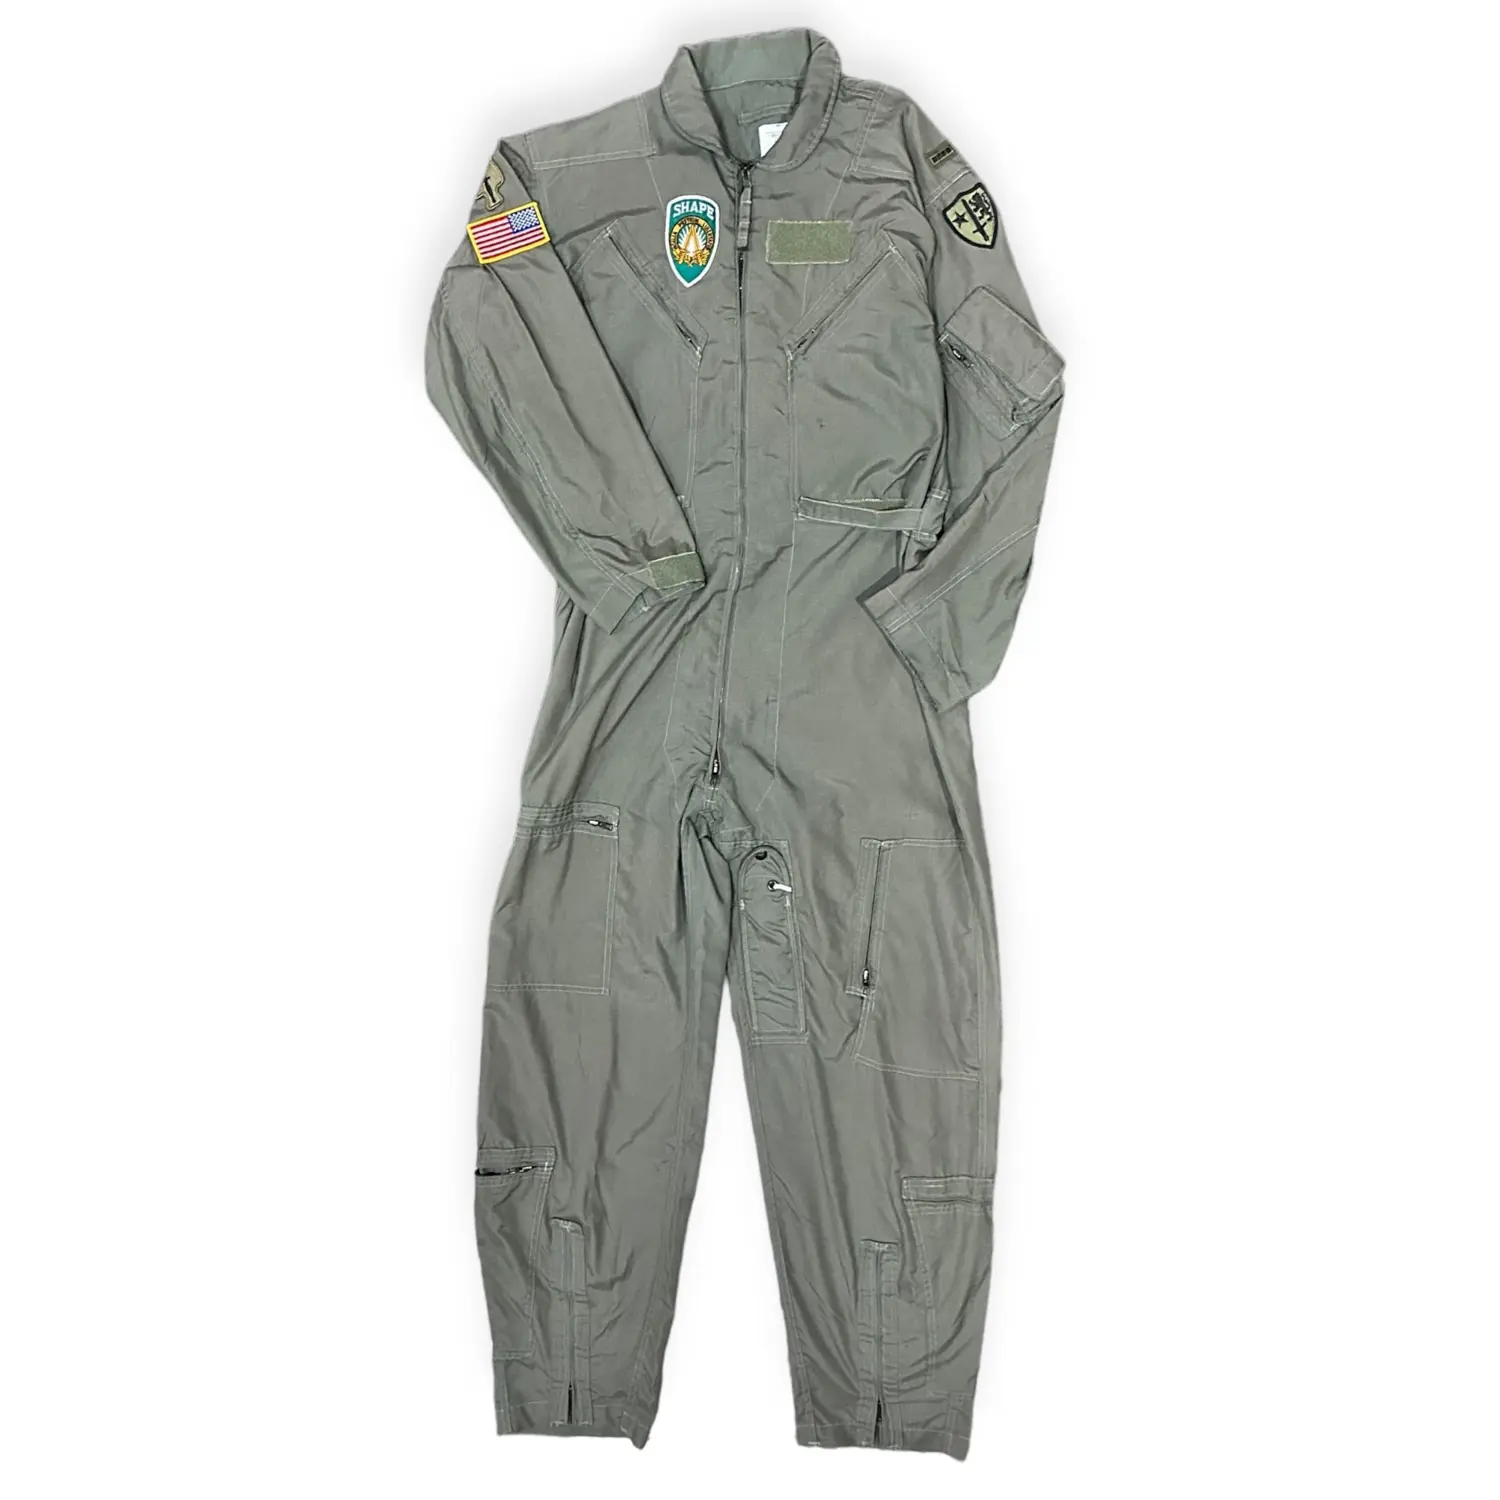 Vintage 90s US Military Air Force Flight Suit -  Size: 48 L